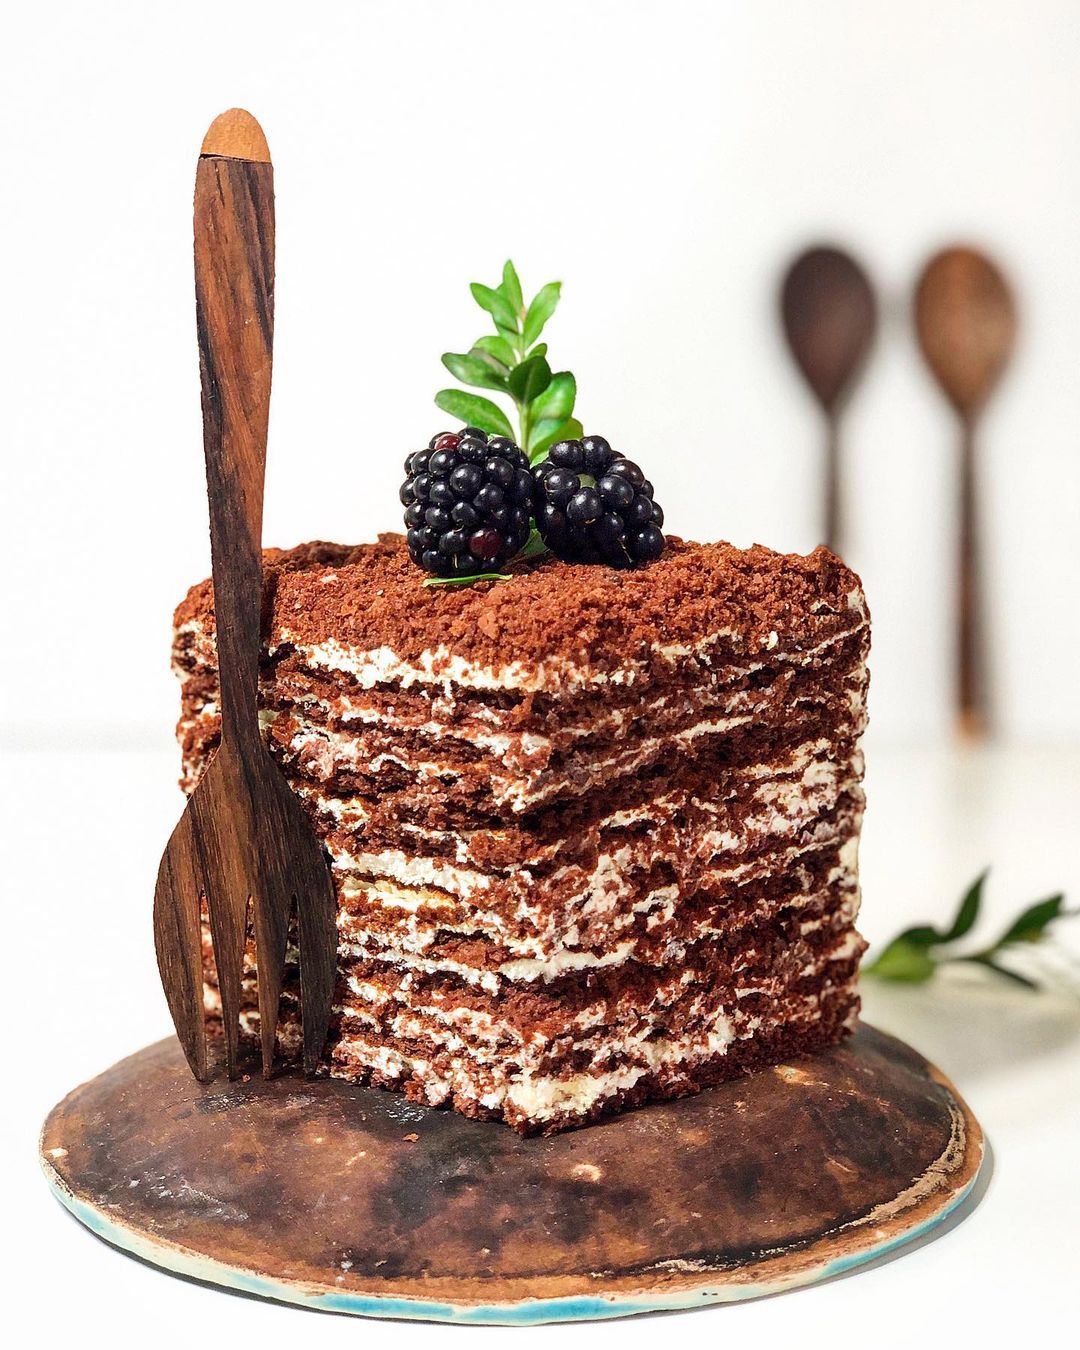 Chocolate honey cake with mascarpone